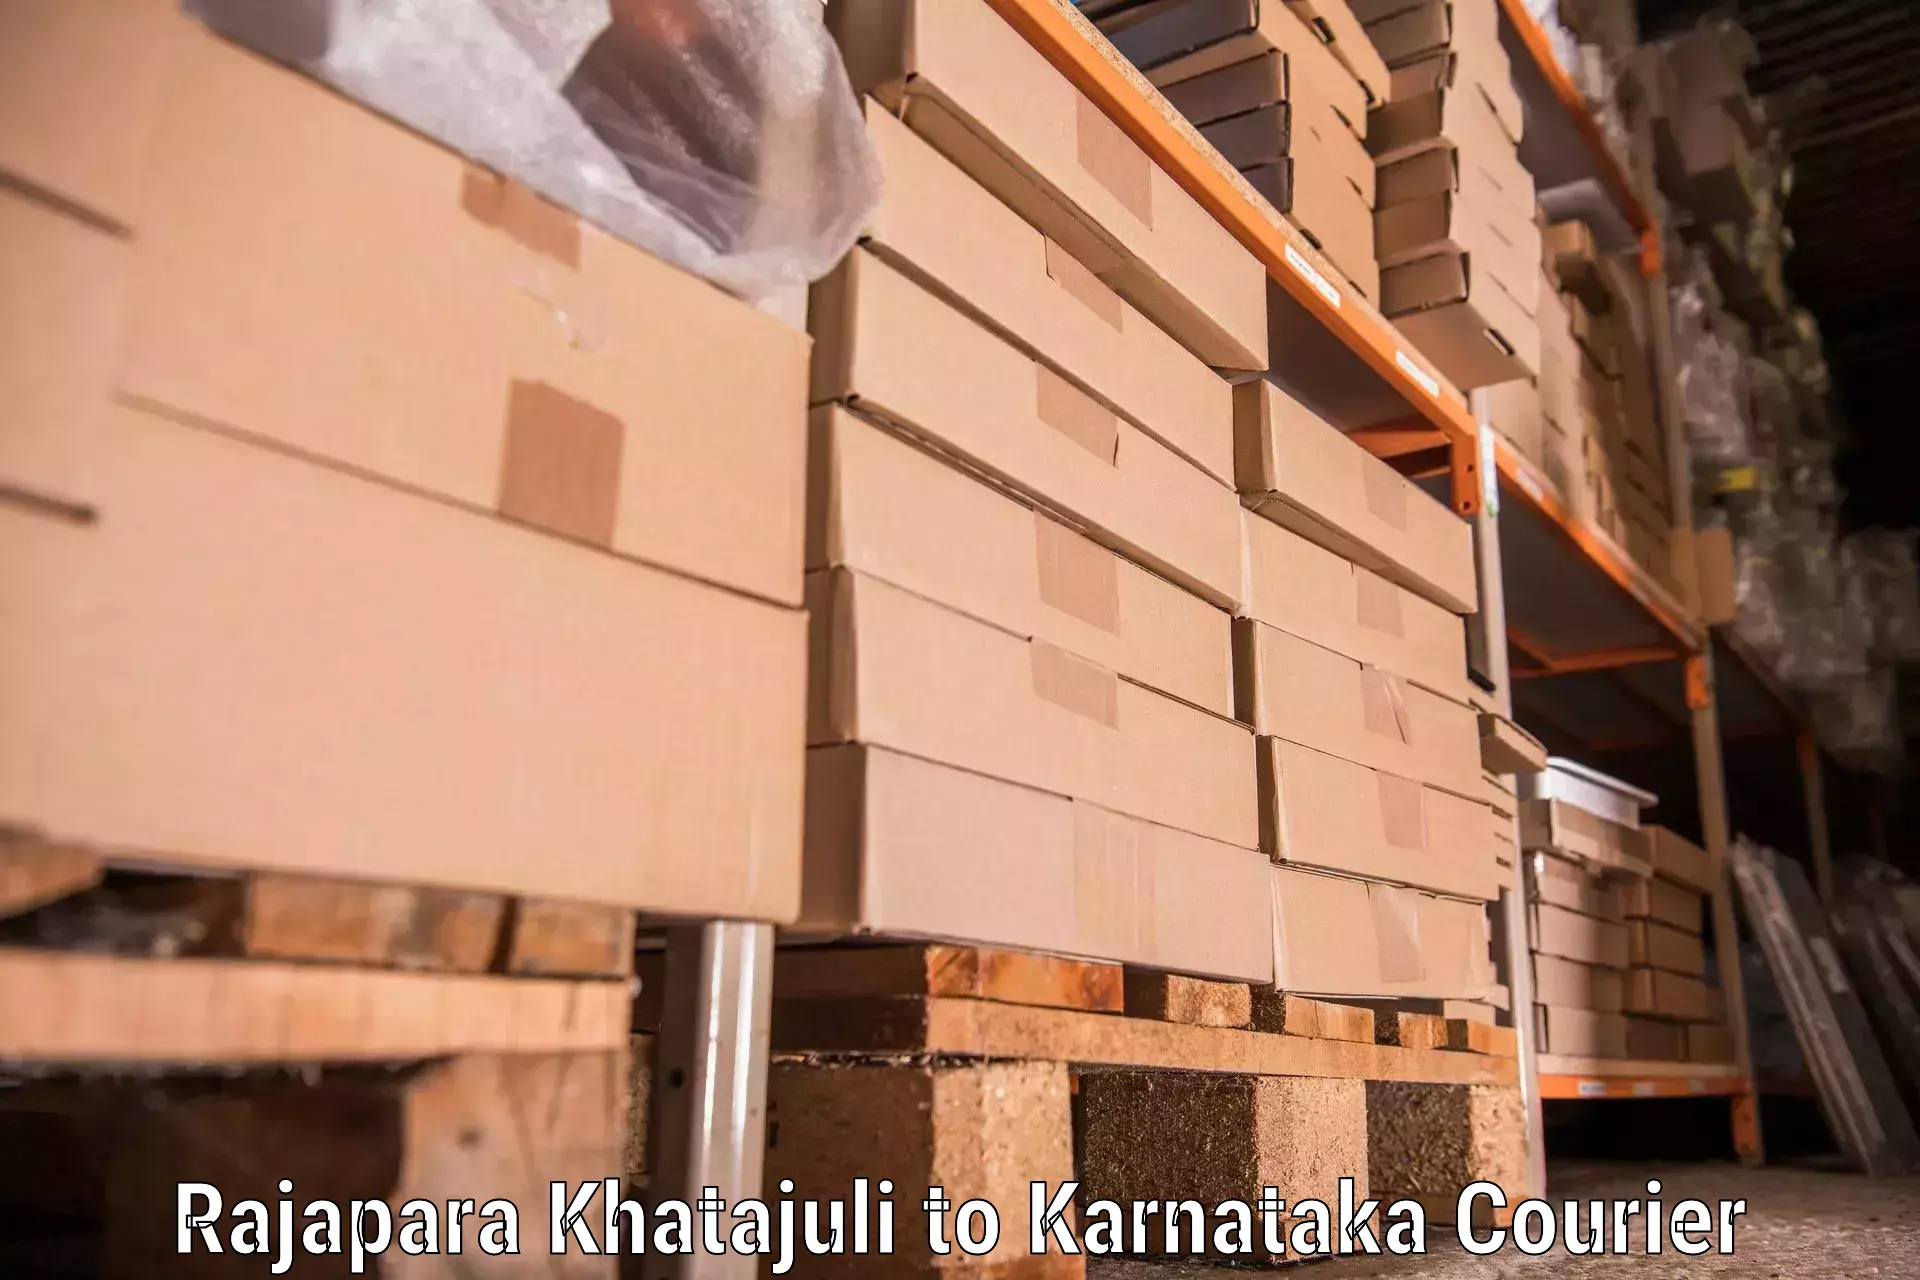 Furniture moving assistance Rajapara Khatajuli to Manipal